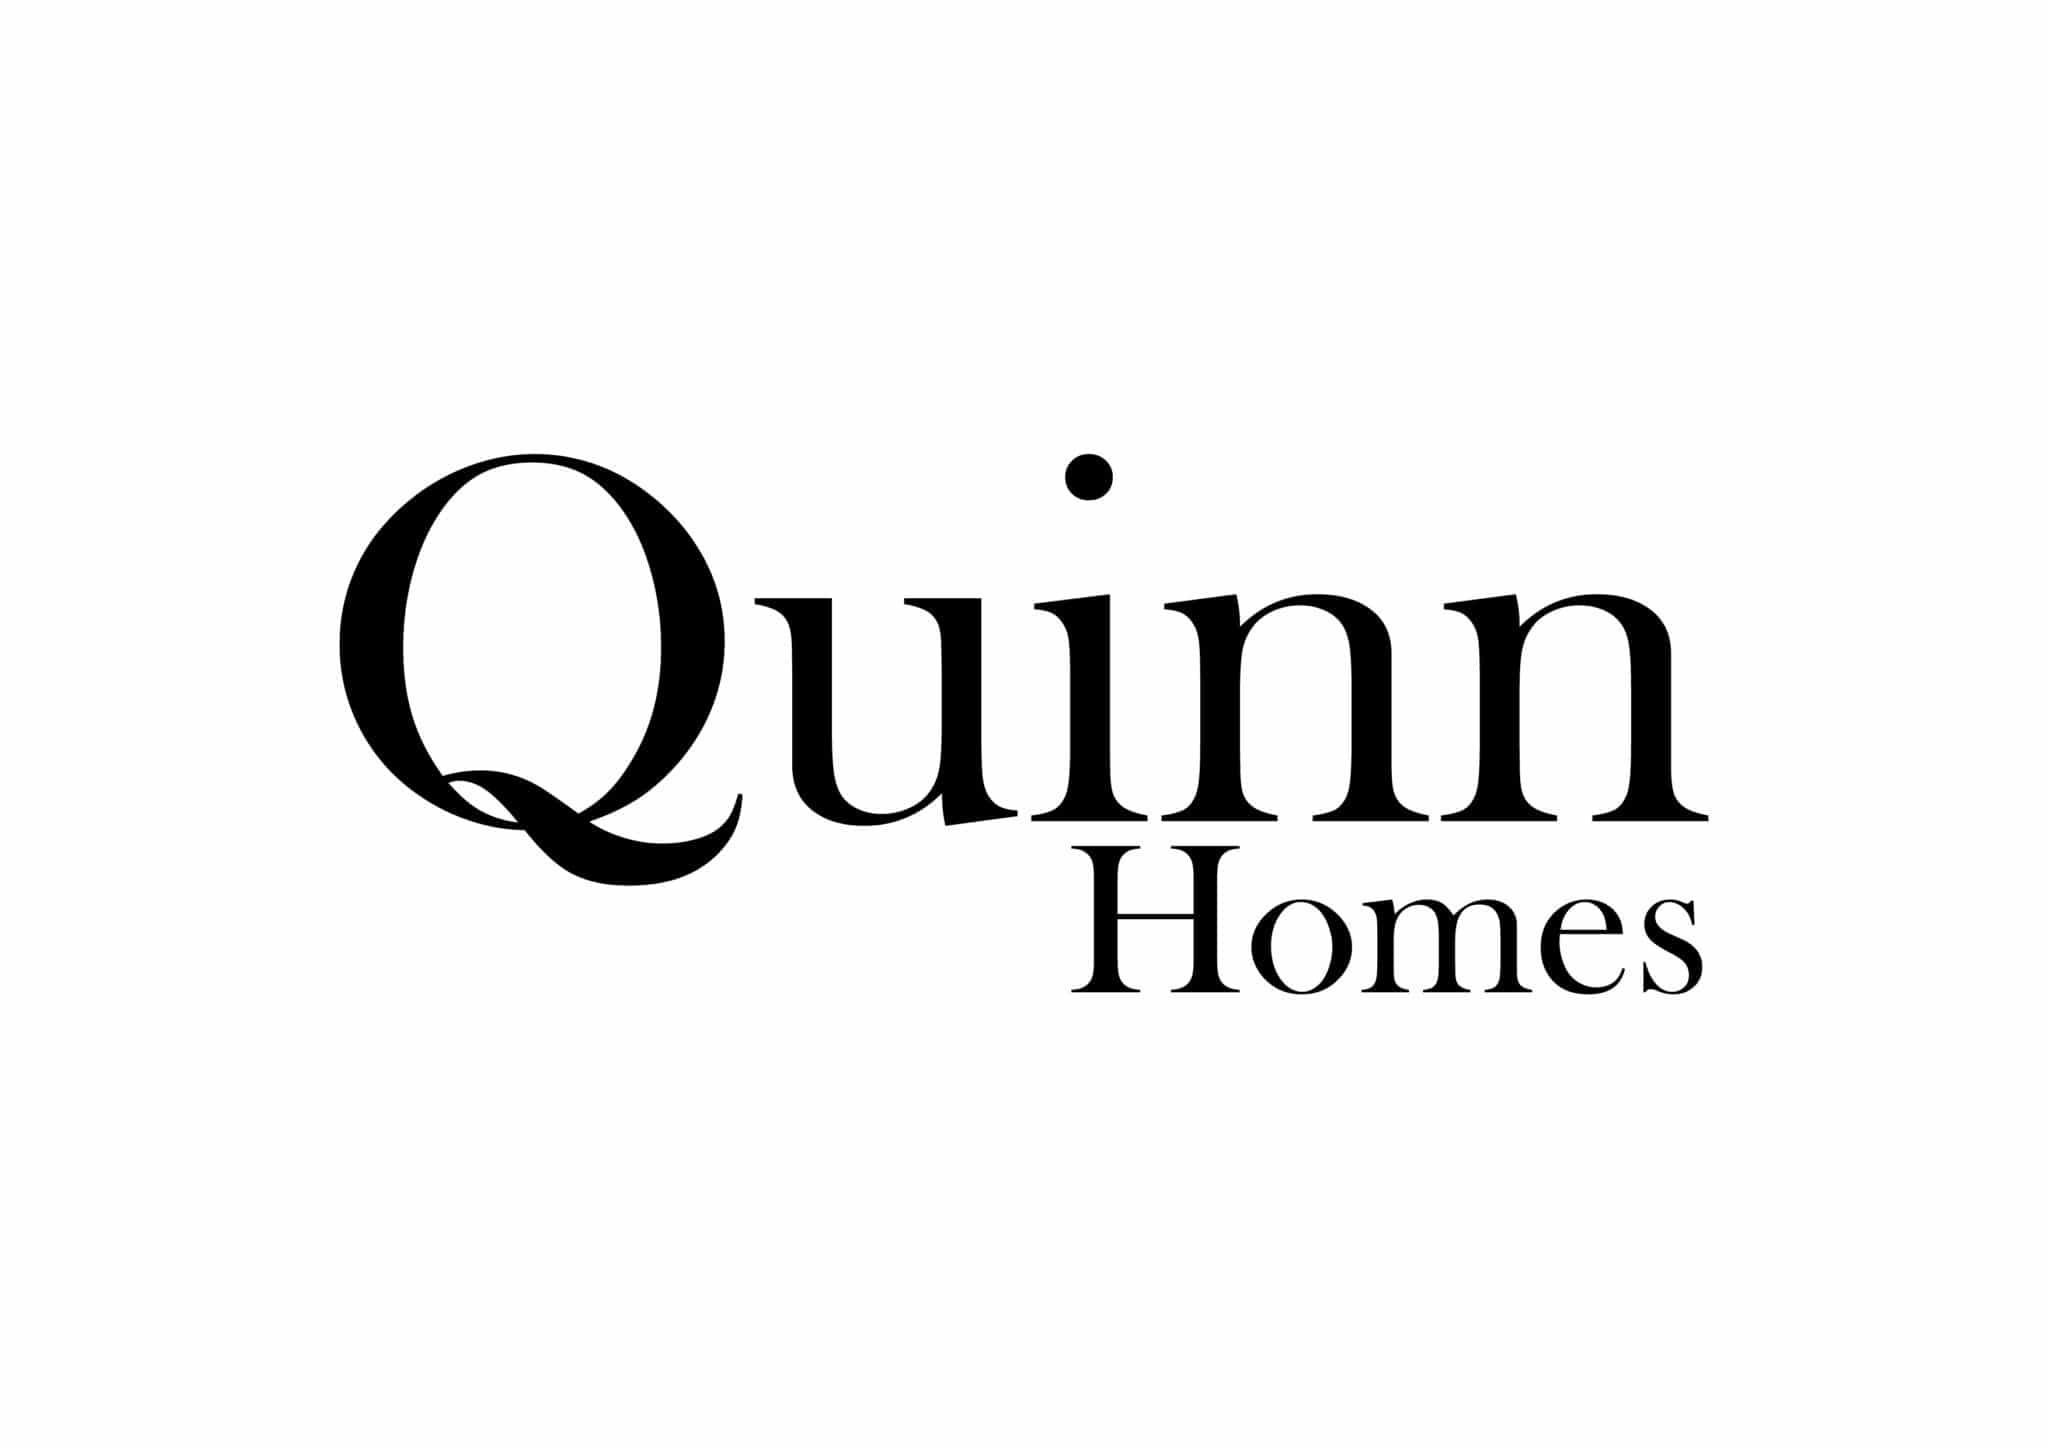 QUINN Homes